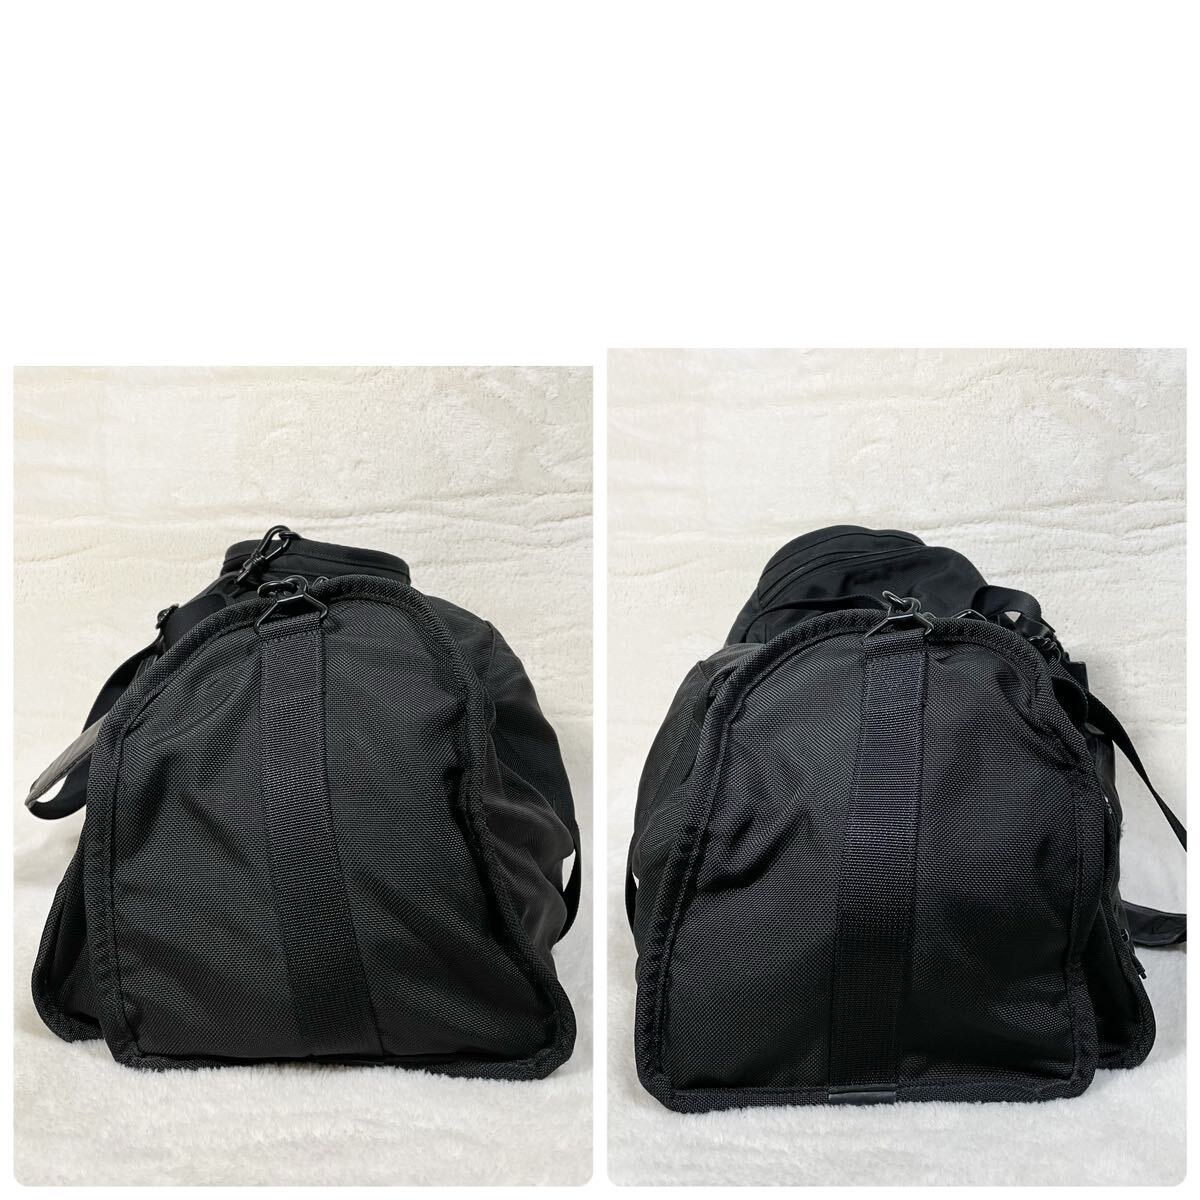 【大容量】 TUMI トゥミ ボストンバッグ 2way ビジネスバッグ ショルダー 263d3 ブラック 黒 メンズ 旅行カバン 鞄 の画像4